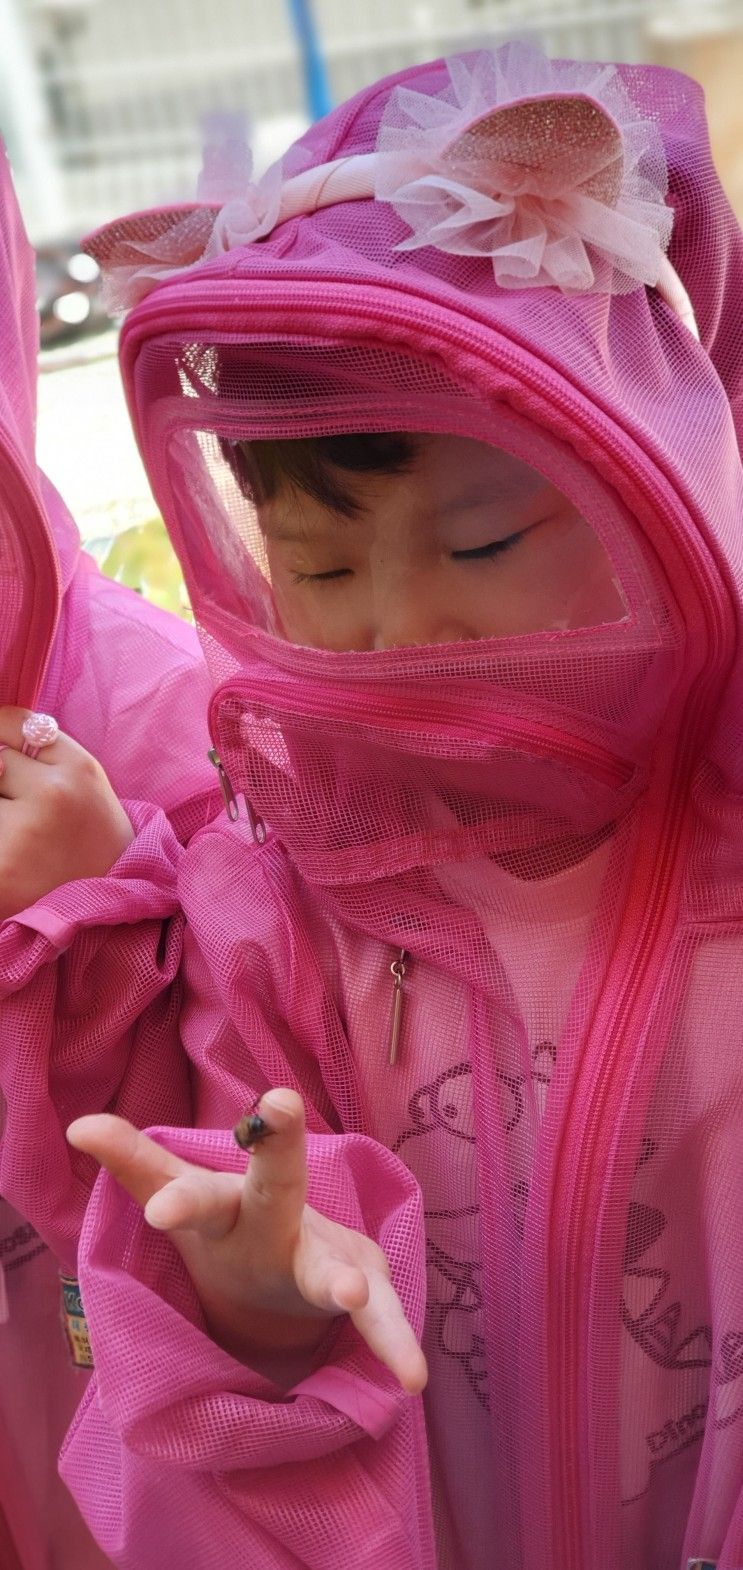 거제 연초 거제꿀벌교육농장 : 특별하고 신나는 체험학습